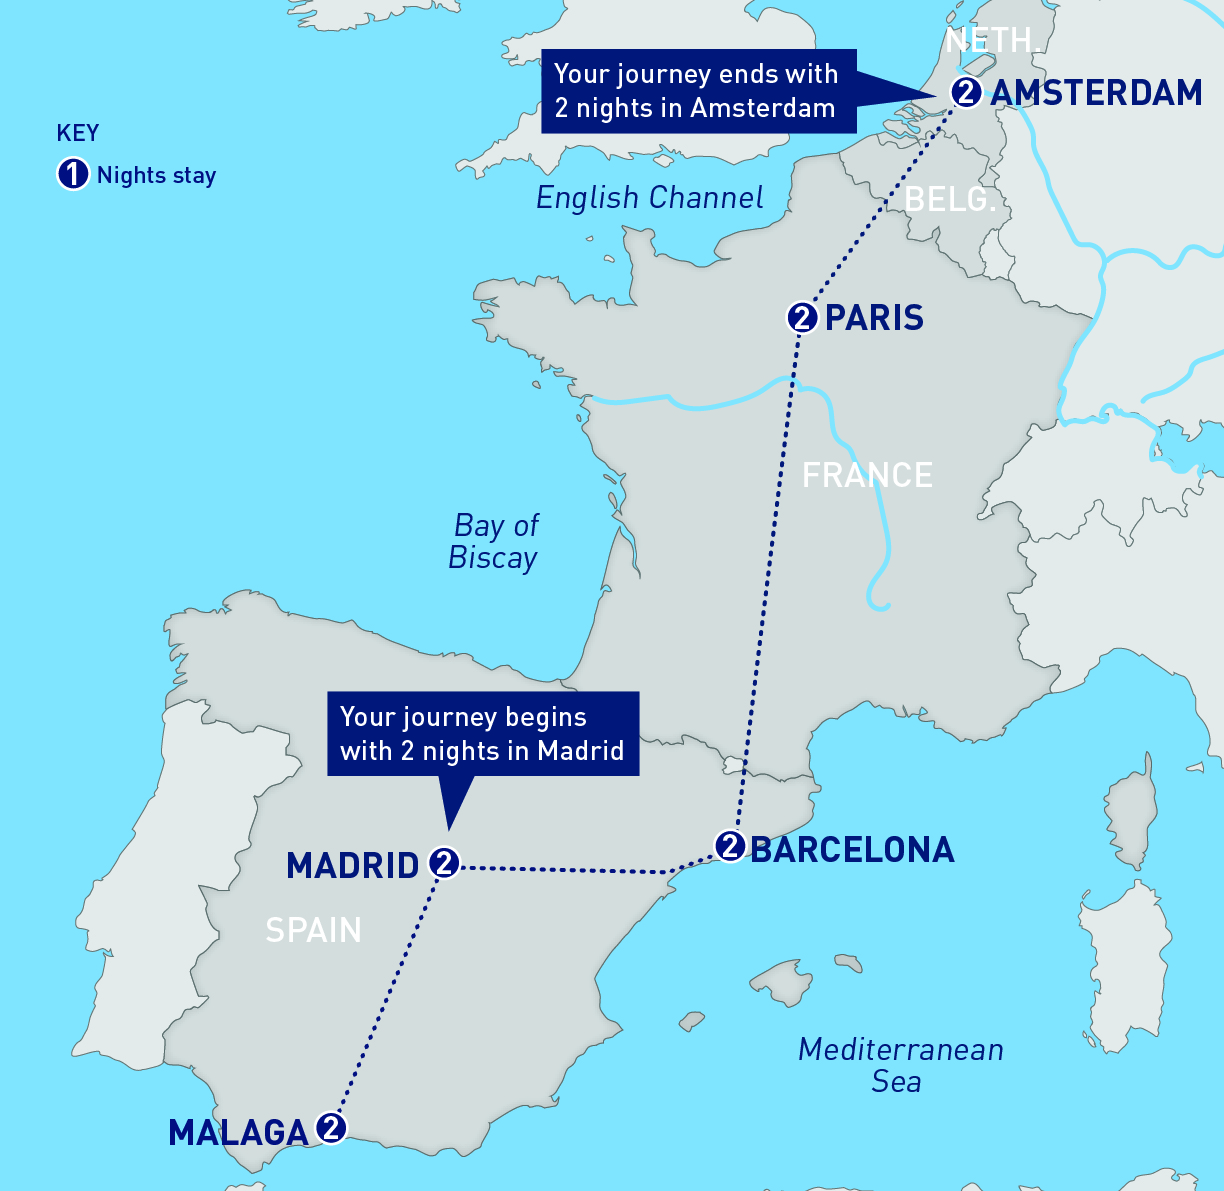 De databank eerste Haven Madrid, Malaga, Barcelona, Paris, and Amsterdam | Railbookers®